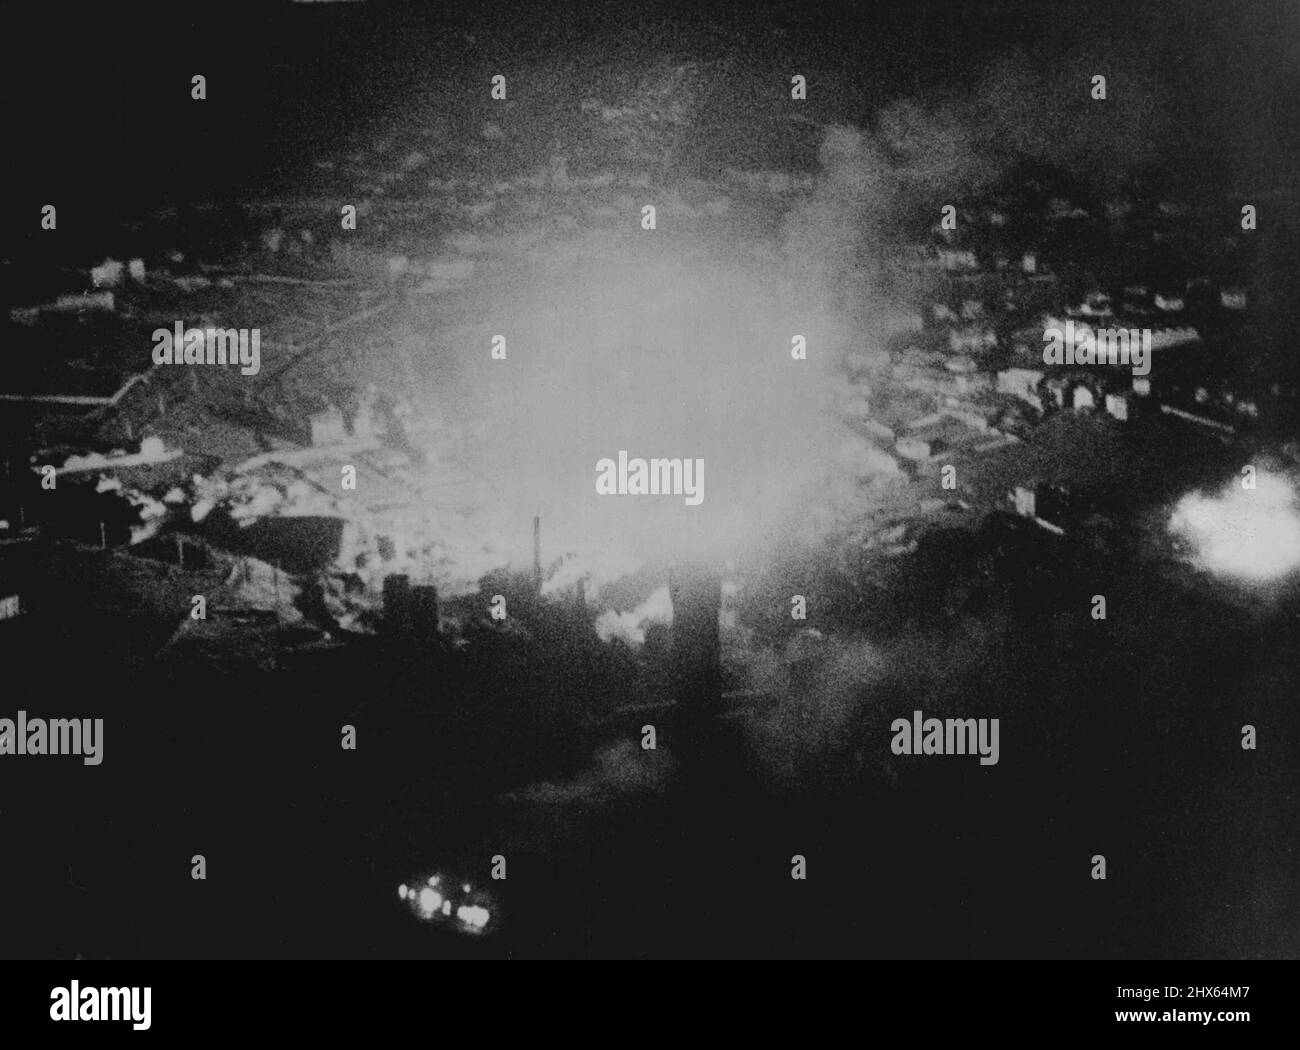 Photographié par Heavy Bomb explosion Flash: R.A.F. Attaque sur Aircraft Bearings Factory à la Ricamarie. Avion de R.A.F. Le bombardier Commente a attaqué une usine à aiguilles à la Ricamarie, près de Clermont-Ferrand, en France, ou dans la nuit du 10 au 11 mars. Cette image oblique inhabituelle montre une bombe lourde qui explose dans la zone cible. La lumière de l'explosion a éclairé la campagne environnante et a permis au caméraman de la R.A.F. Film Unit, qui volait dans l'un des avions attaquants, à mak Banque D'Images